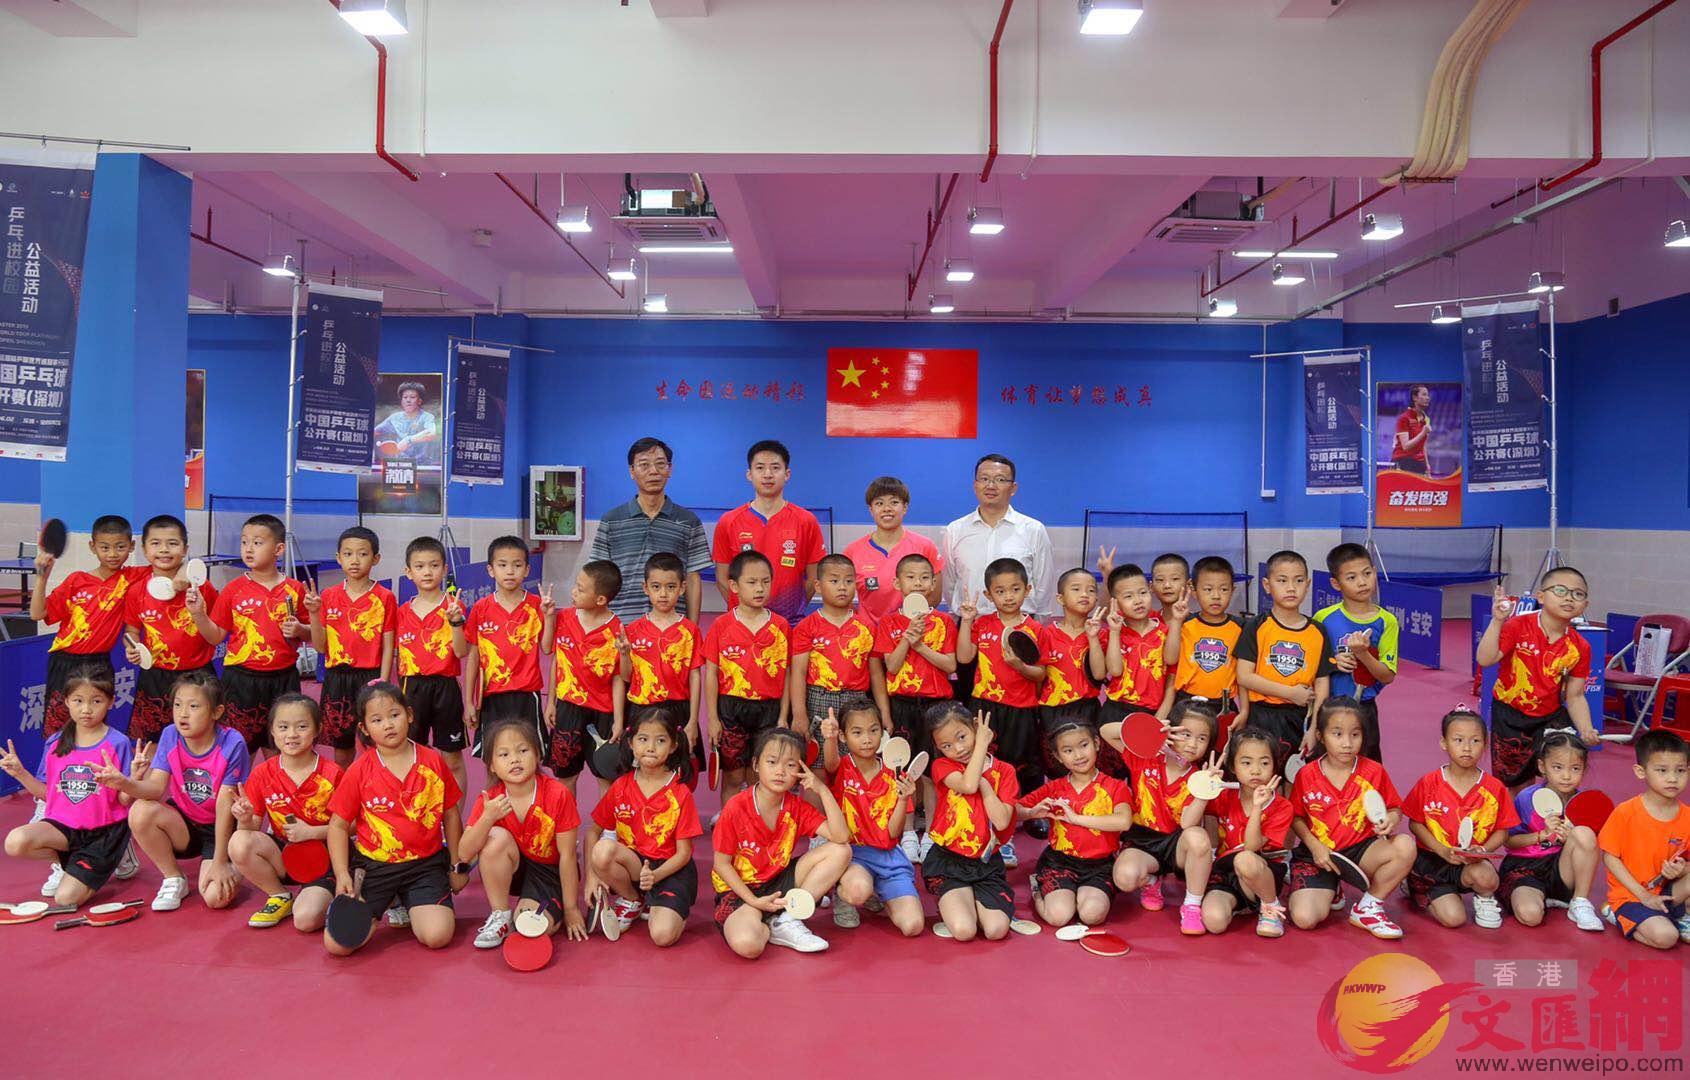 中國國家乒乓球隊運動員方博B王藝迪出席了u中國乒乓球隊進校園公益活動v(記者 黃仰鵬 攝)